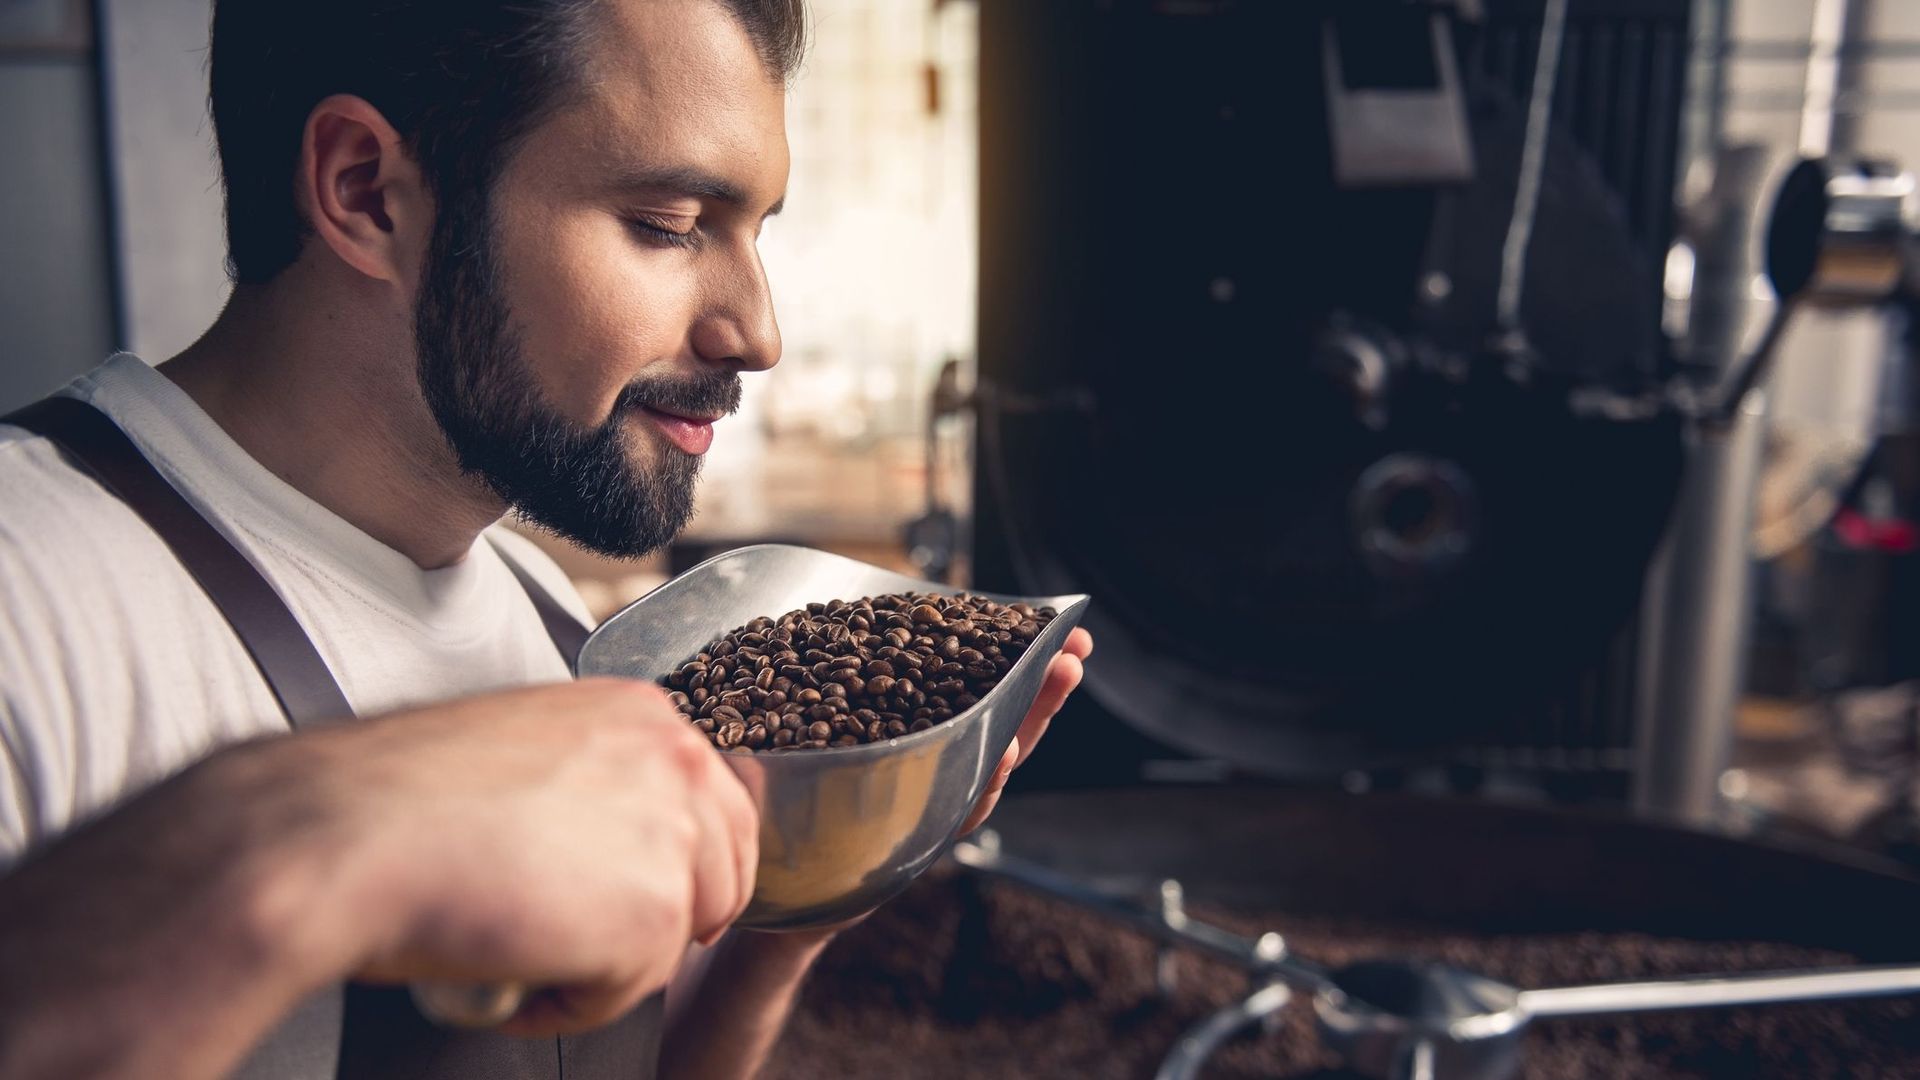 La capacité à détecter l'odeur de café pourrait aider à lutter contre l'addiction au tabac ou au cannabis